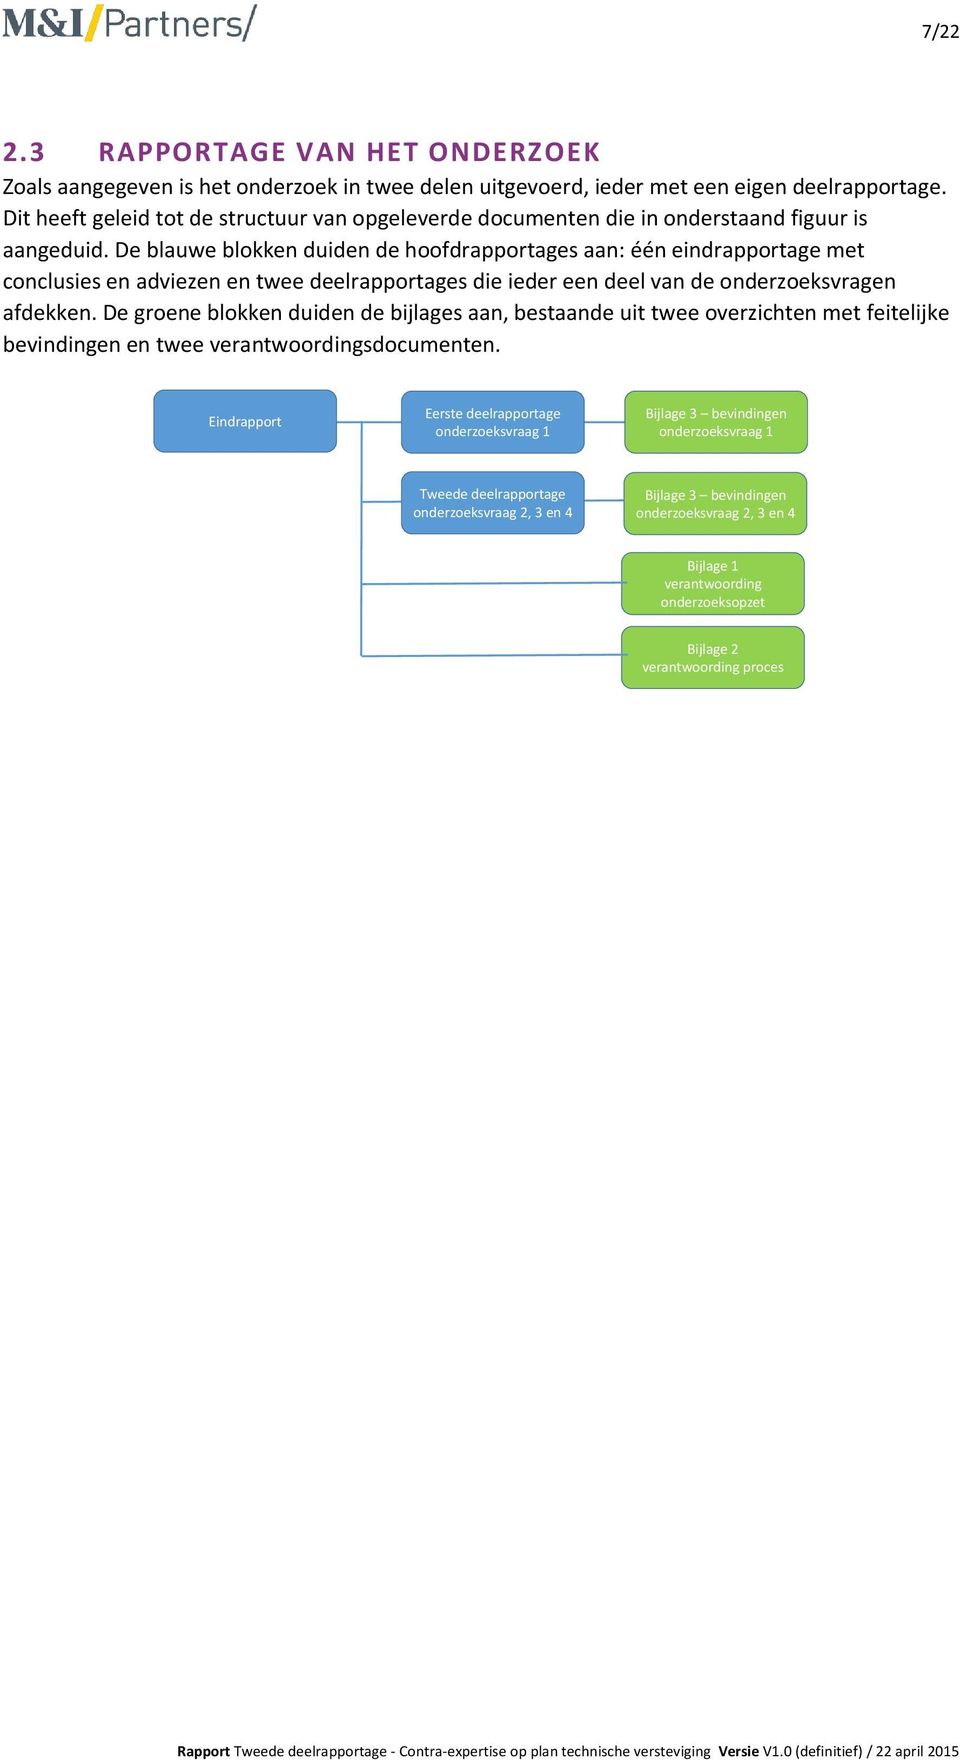 De blauwe blokken duiden de hoofdrapportages aan: één eindrapportage met conclusies en adviezen en twee deelrapportages die ieder een deel van de onderzoeksvragen afdekken.